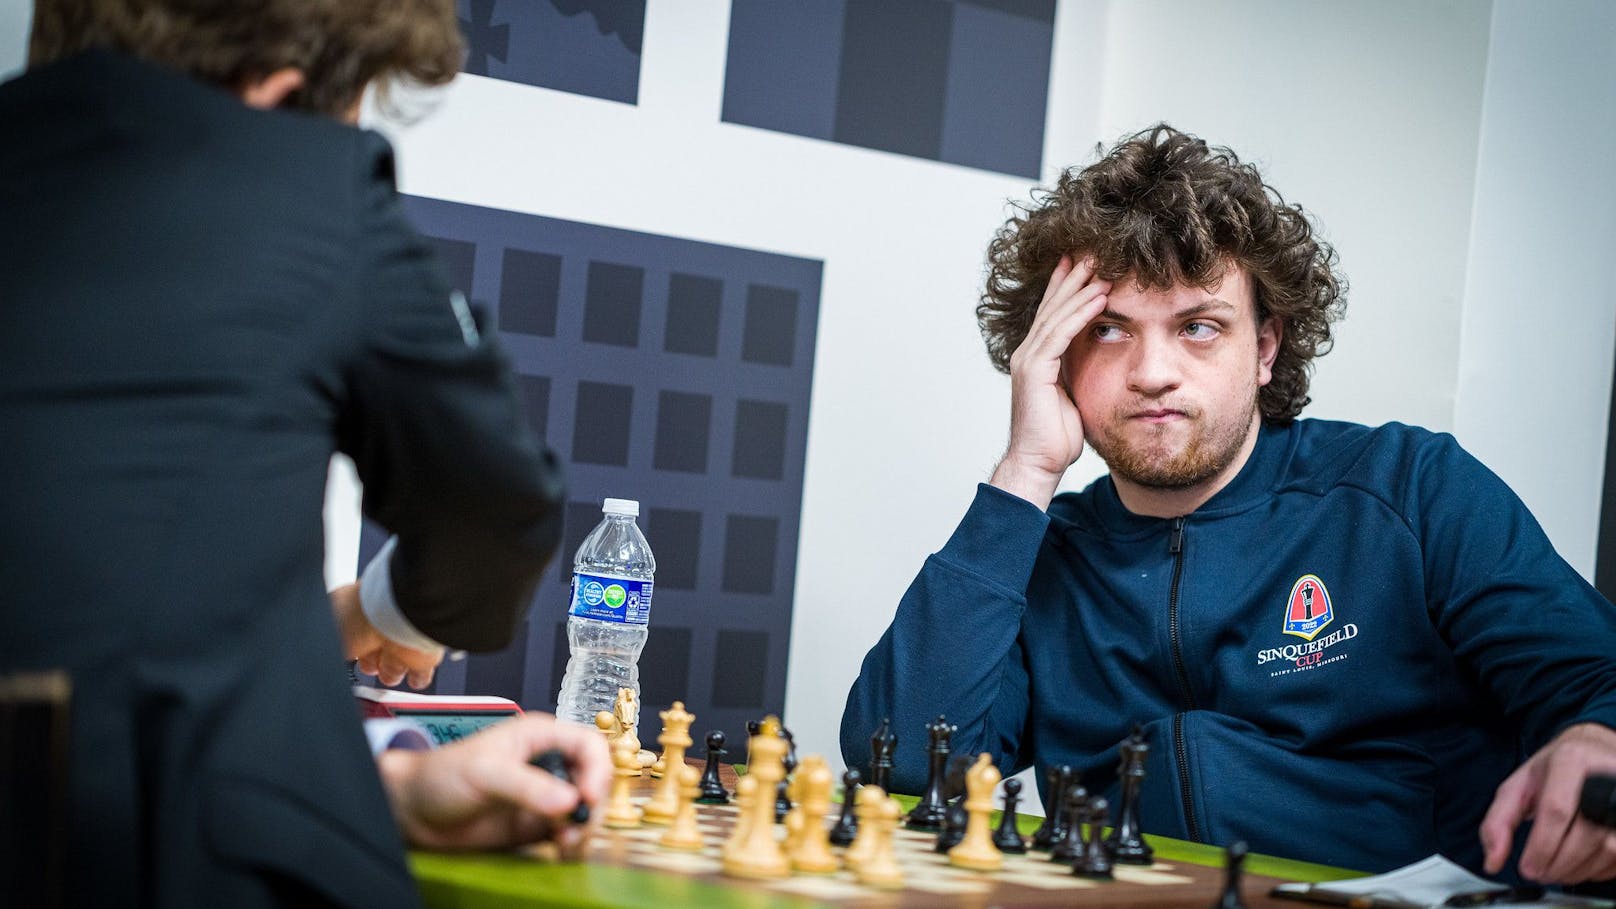 Ausgekugelt mit Liebeskugeln? Der 19-jährige Schach-Shootingstar Hans Niemann sieht sich heftigen Vorwürfen ausgesetzt.